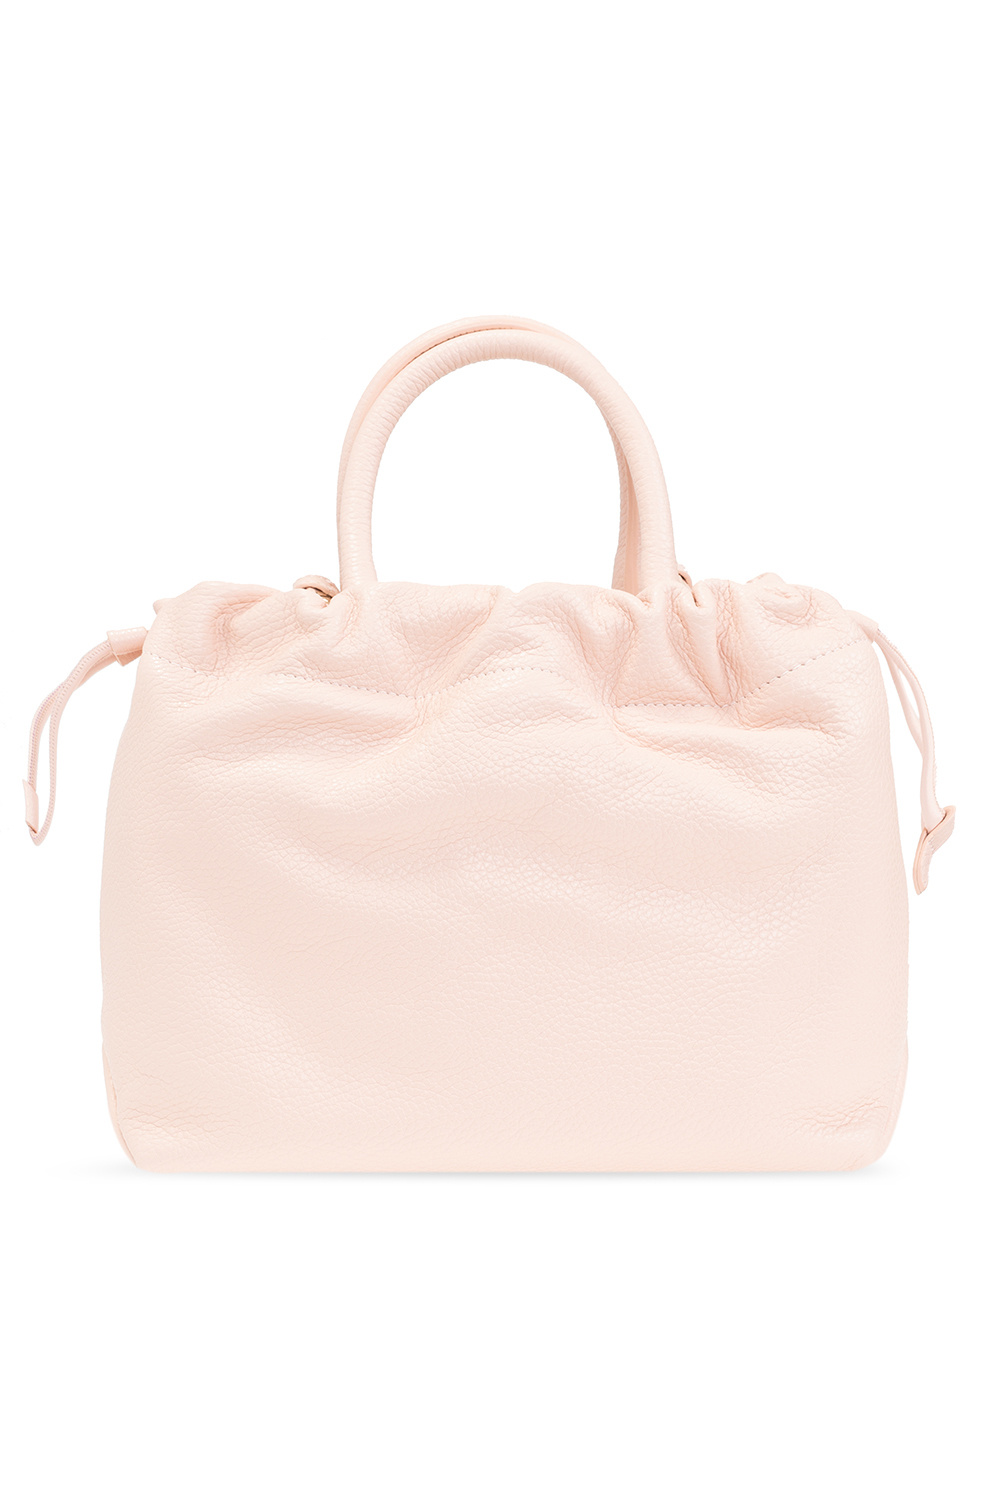 Furla 'Essential' bucket bag | Women's Bags | IetpShops